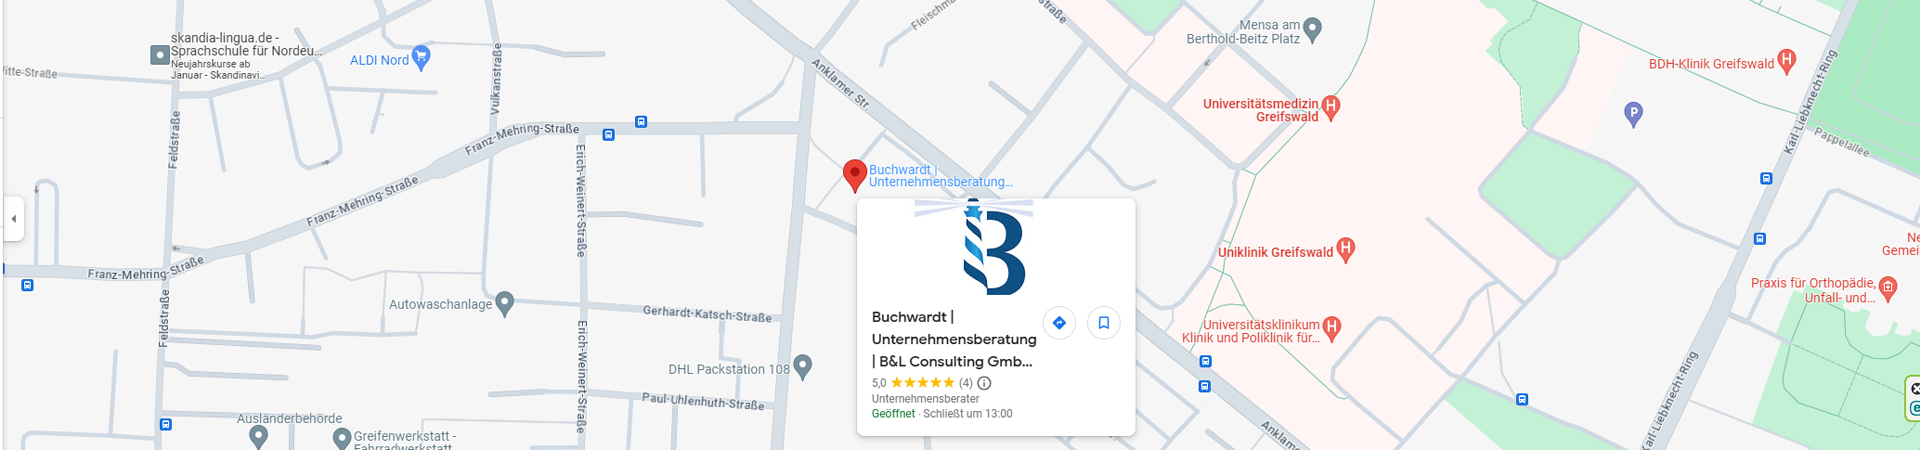 google-maps-unternhemnsberatung-buchwardt-greifswald